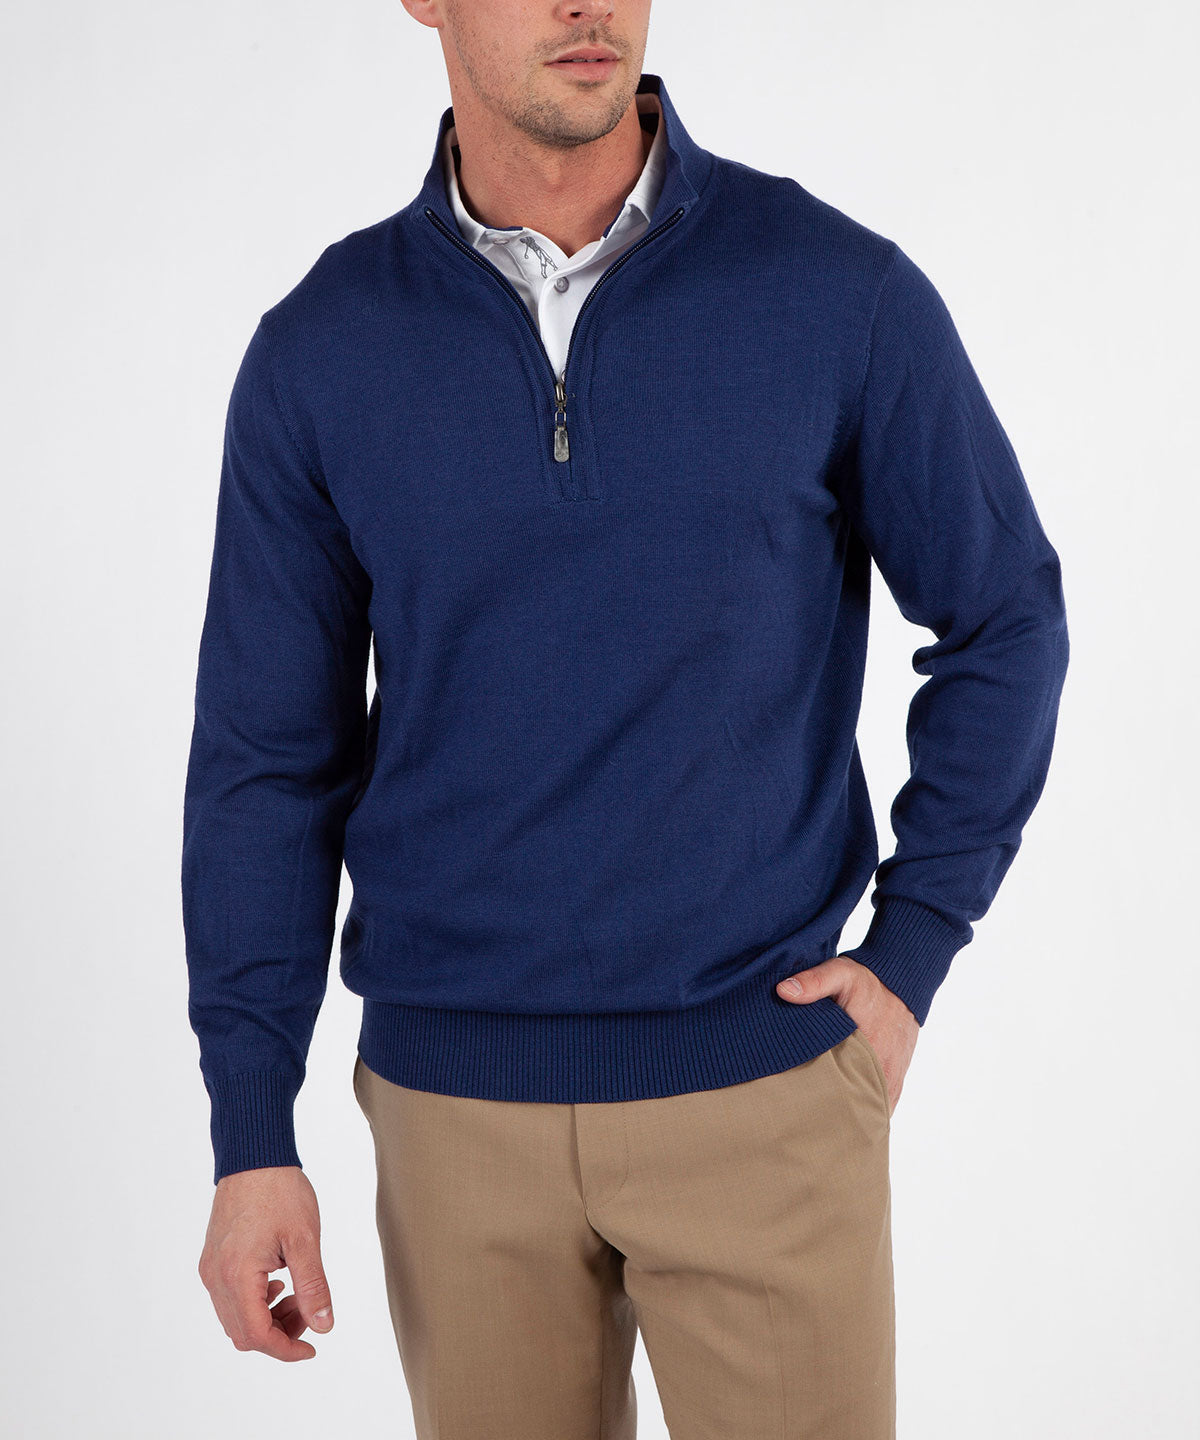 Signature 100% Merino Wool Quarter-Zip Sweater